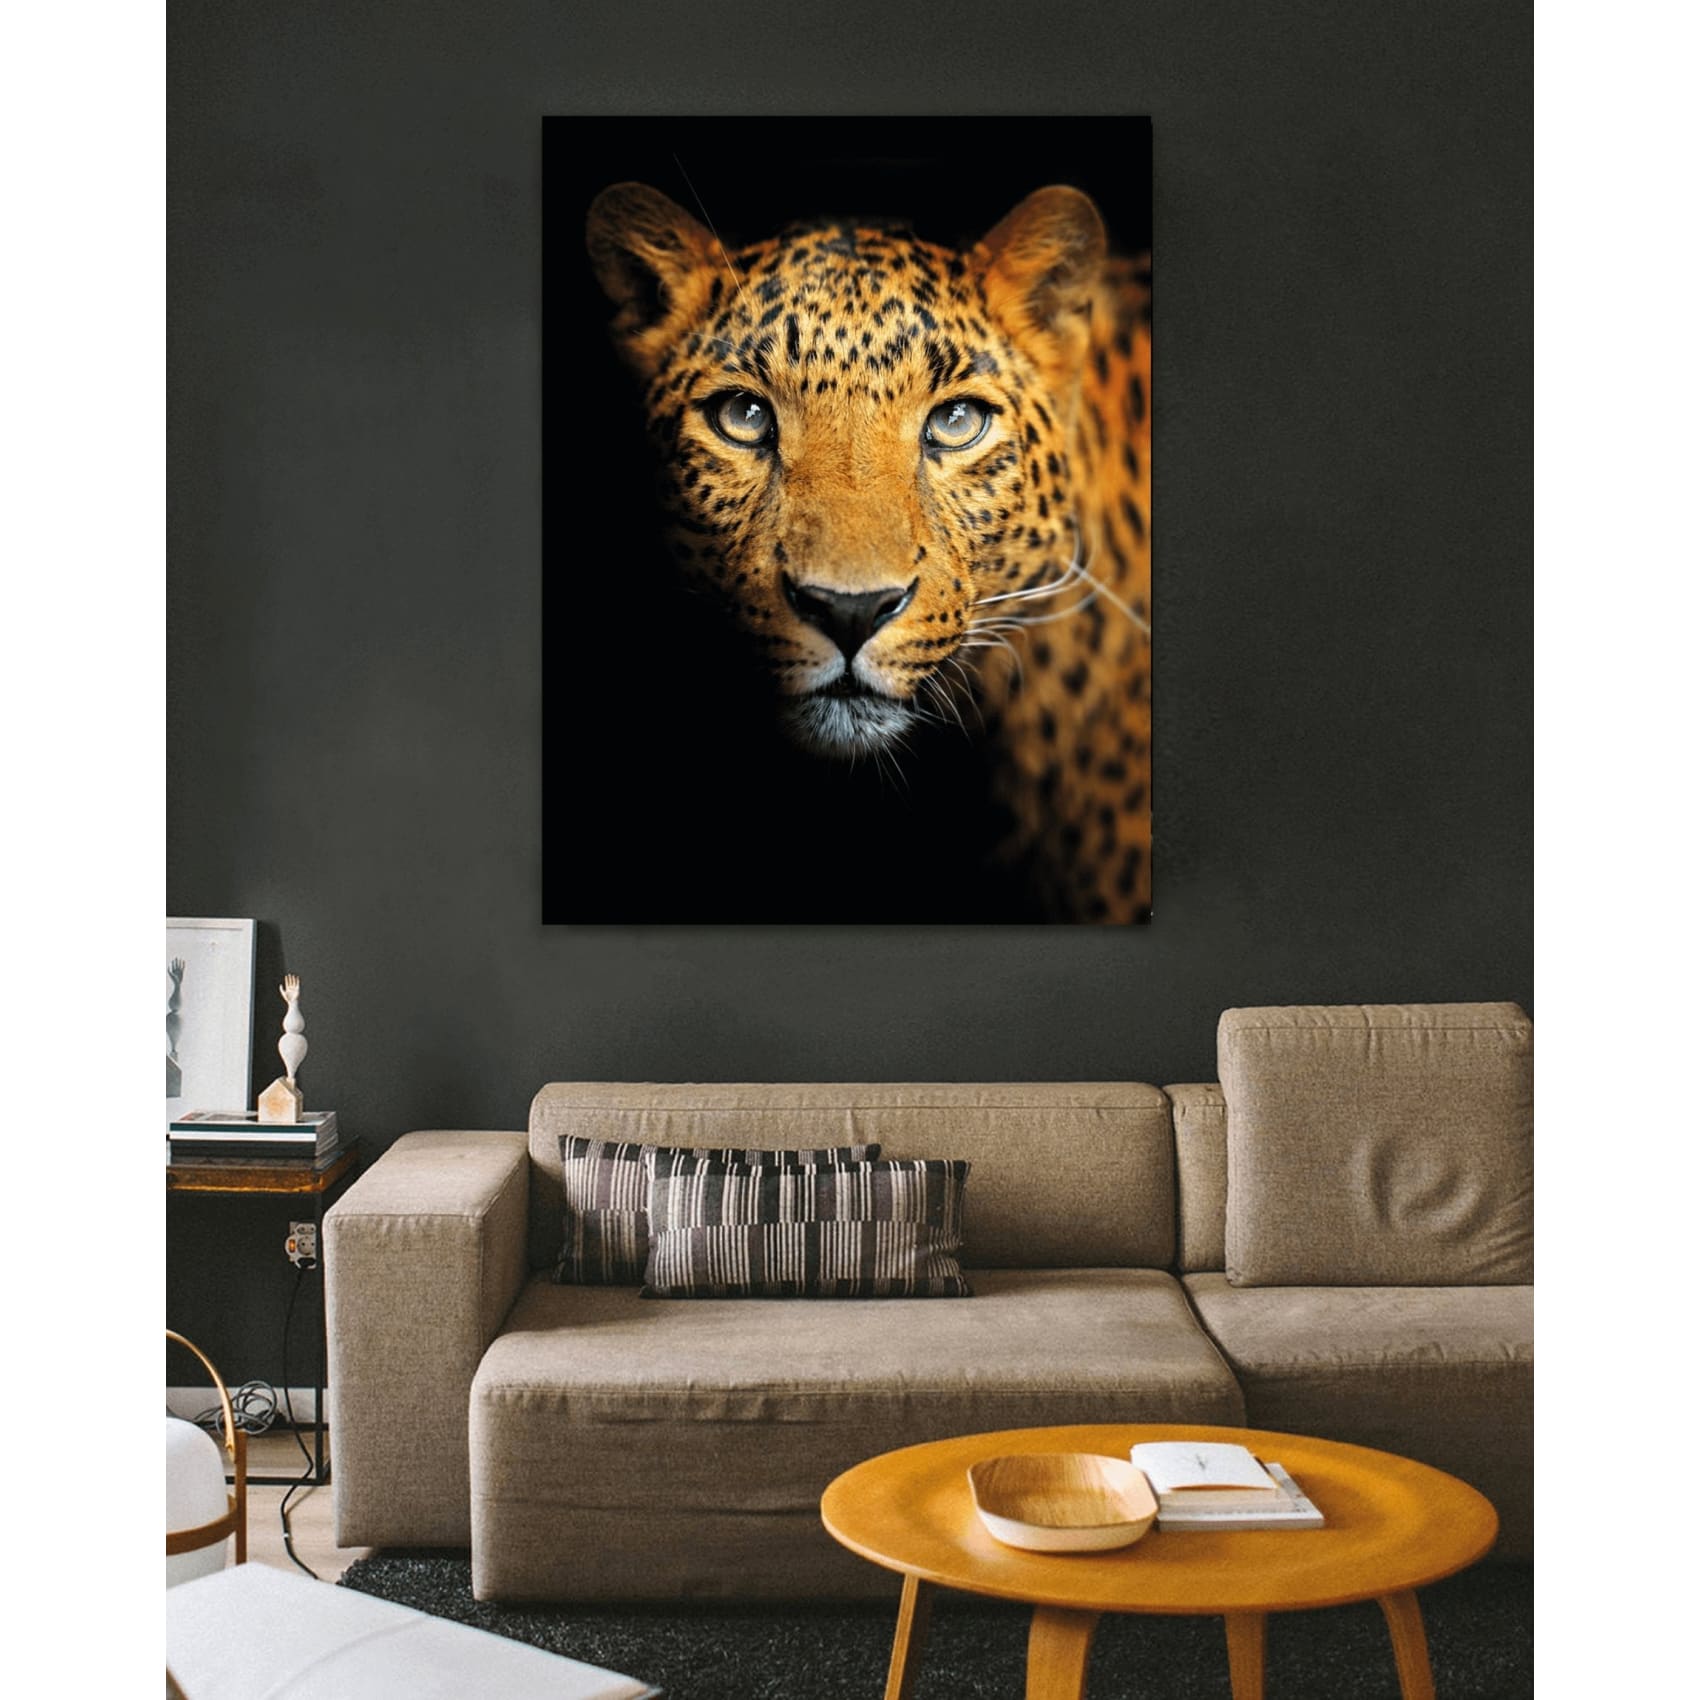 cuadro decorativo, decoración, sala, estudio, habitación, animal,Jaguar